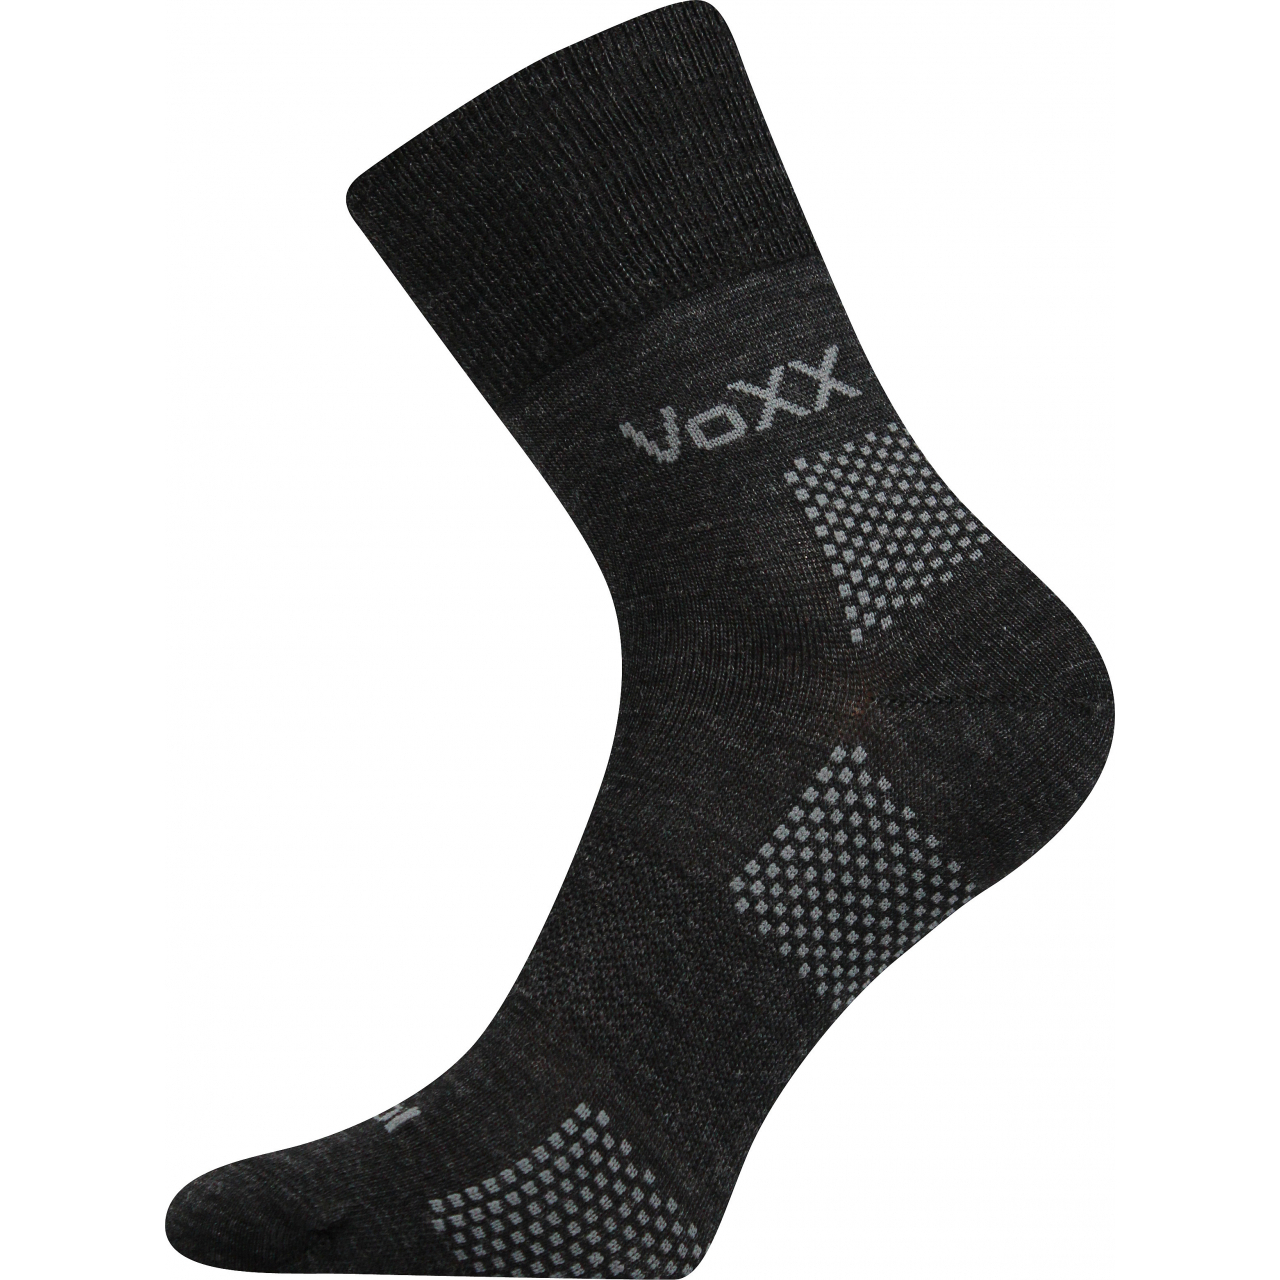 Ponožky funkční unisex Voxx Orionis ThermoCool - tmavě šedé, 35-38